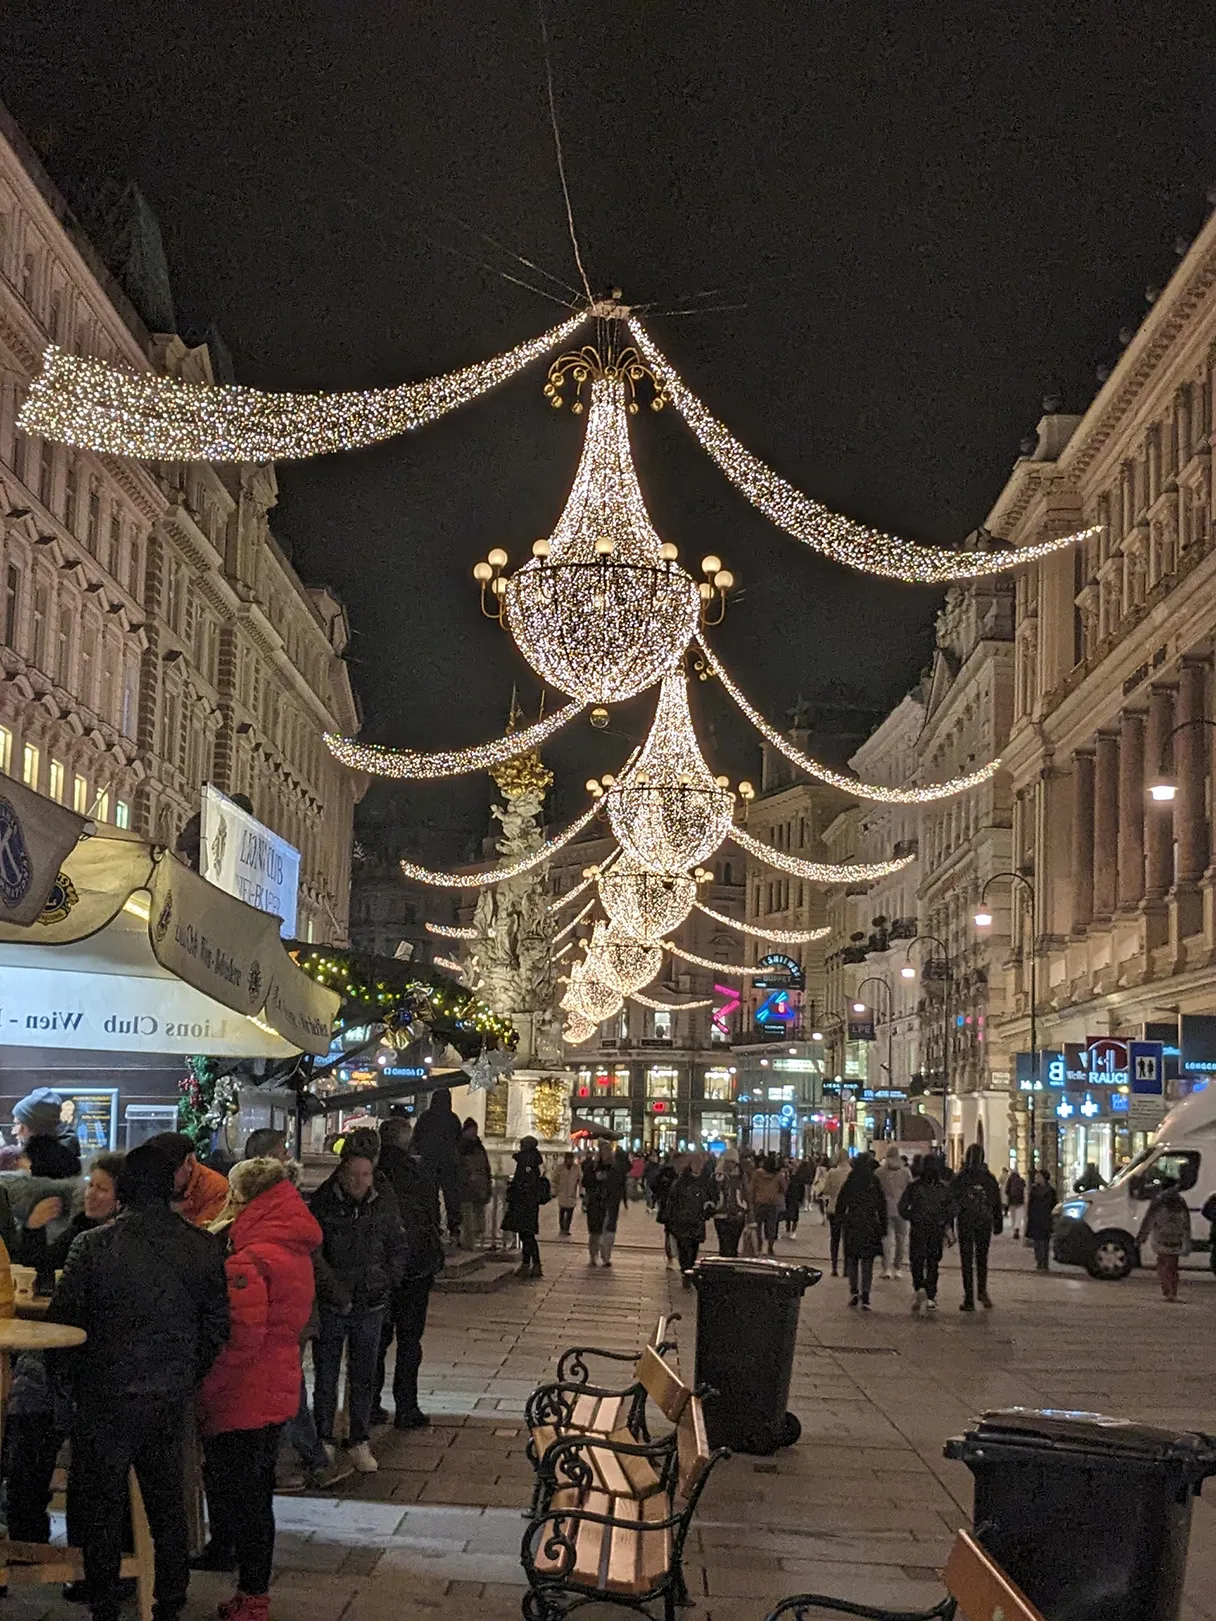 Wiener Graben, EInkaufsstraße, Weihnachtsbeleuchtung, leuchtende Kronleuchter